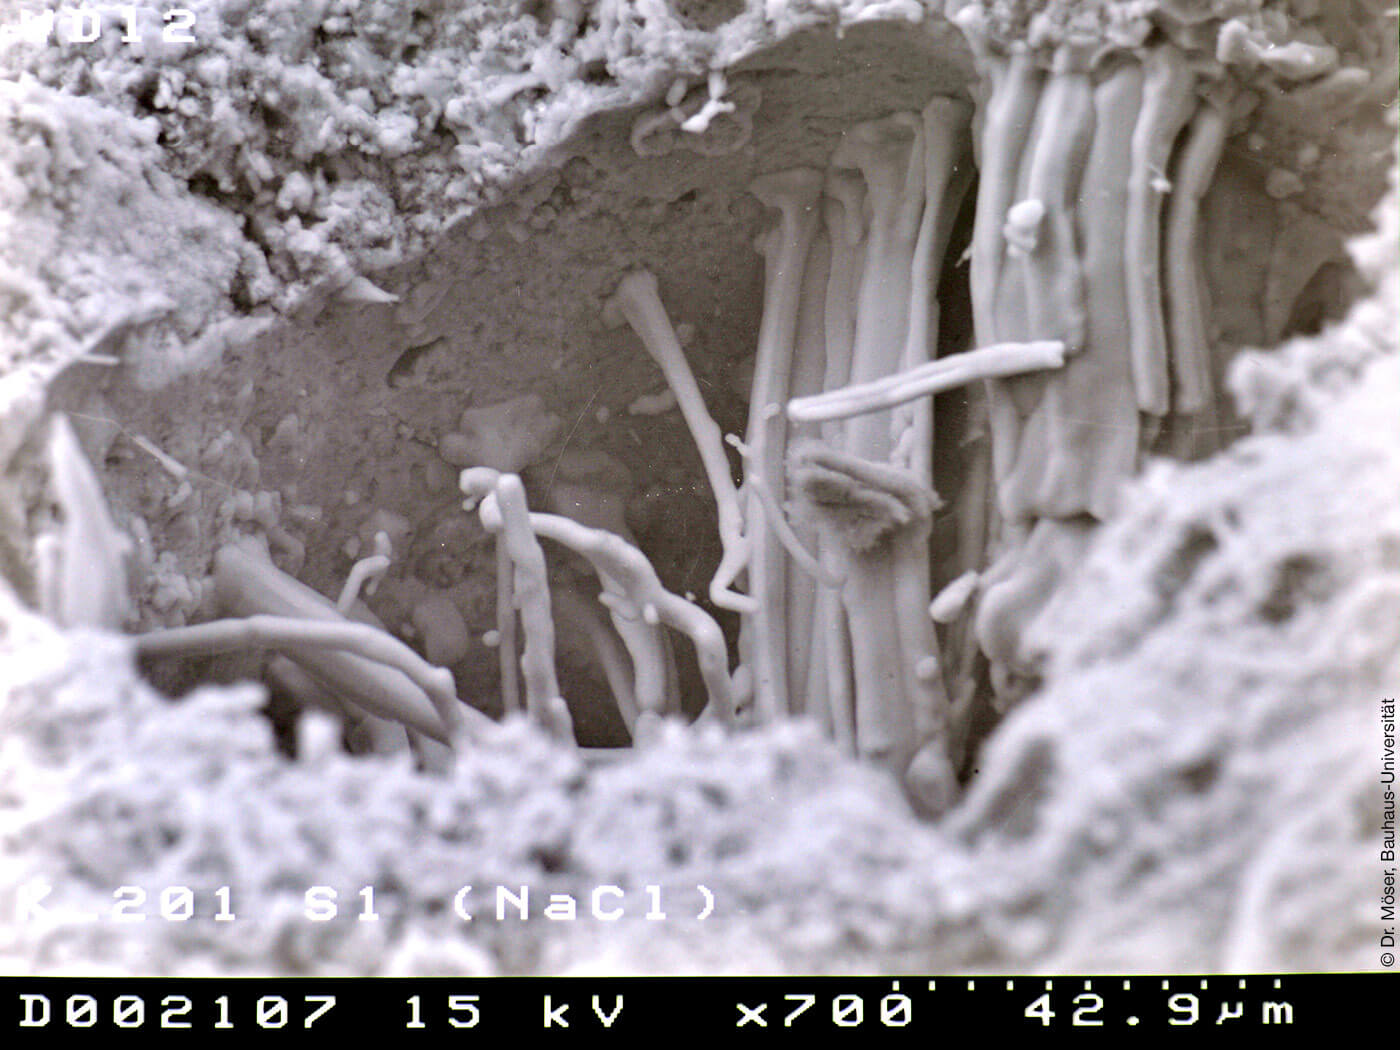 Mikroskopische Aufnahme einer Pore im Sanierputz